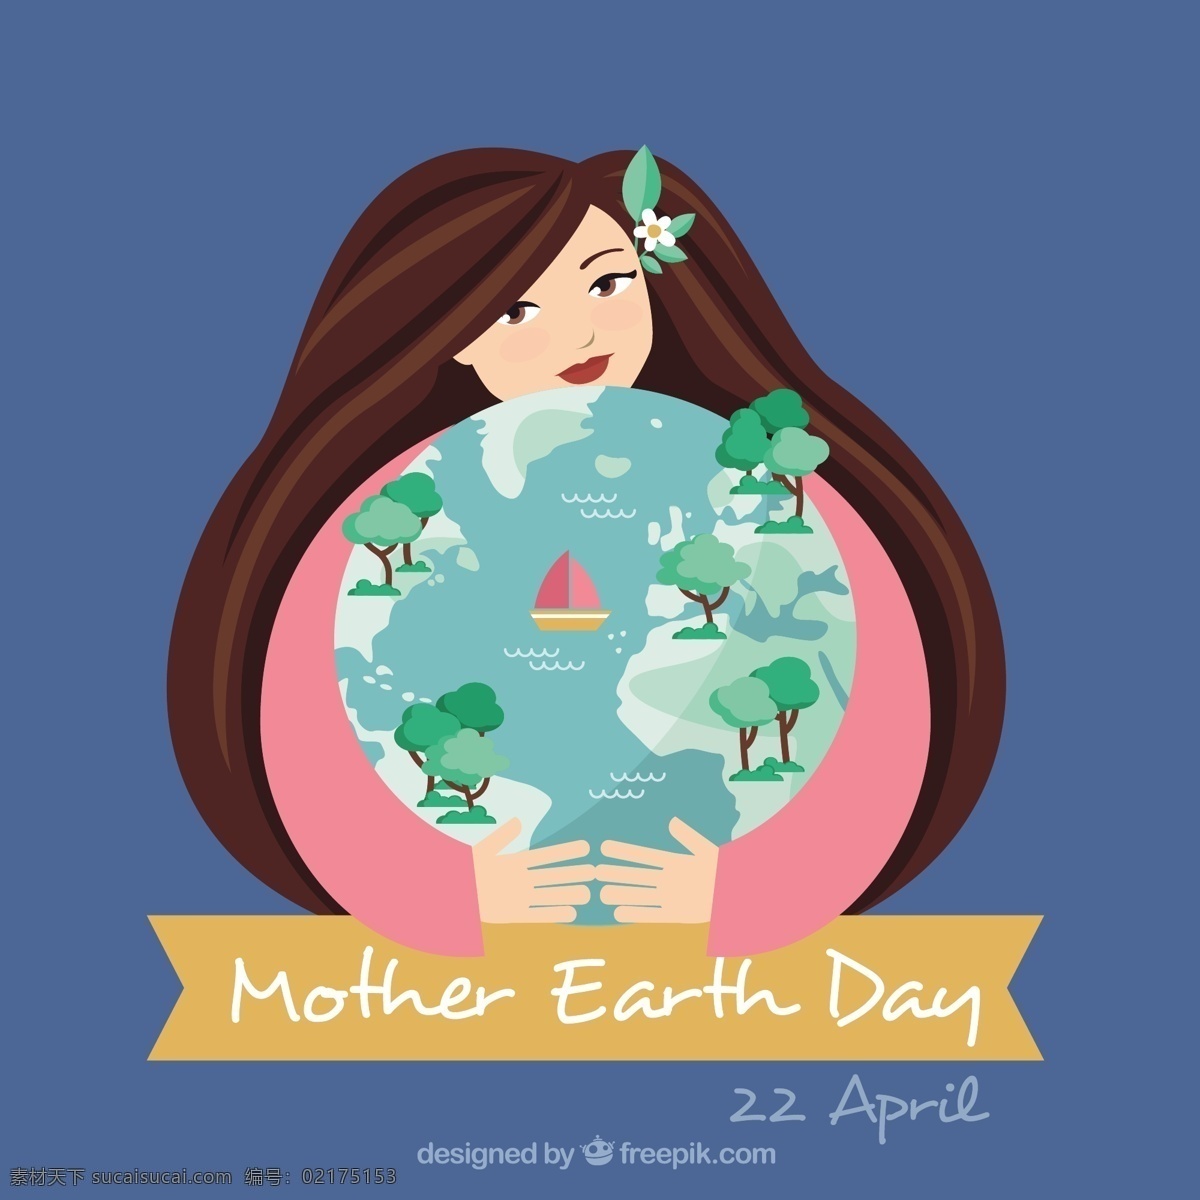 拥抱 世界 妇女 旗帜 背景 横幅 地球 母亲 生态 有机 环境 发展 地面 生态友好 可持续 友好 植被 可持续发展 大地母亲